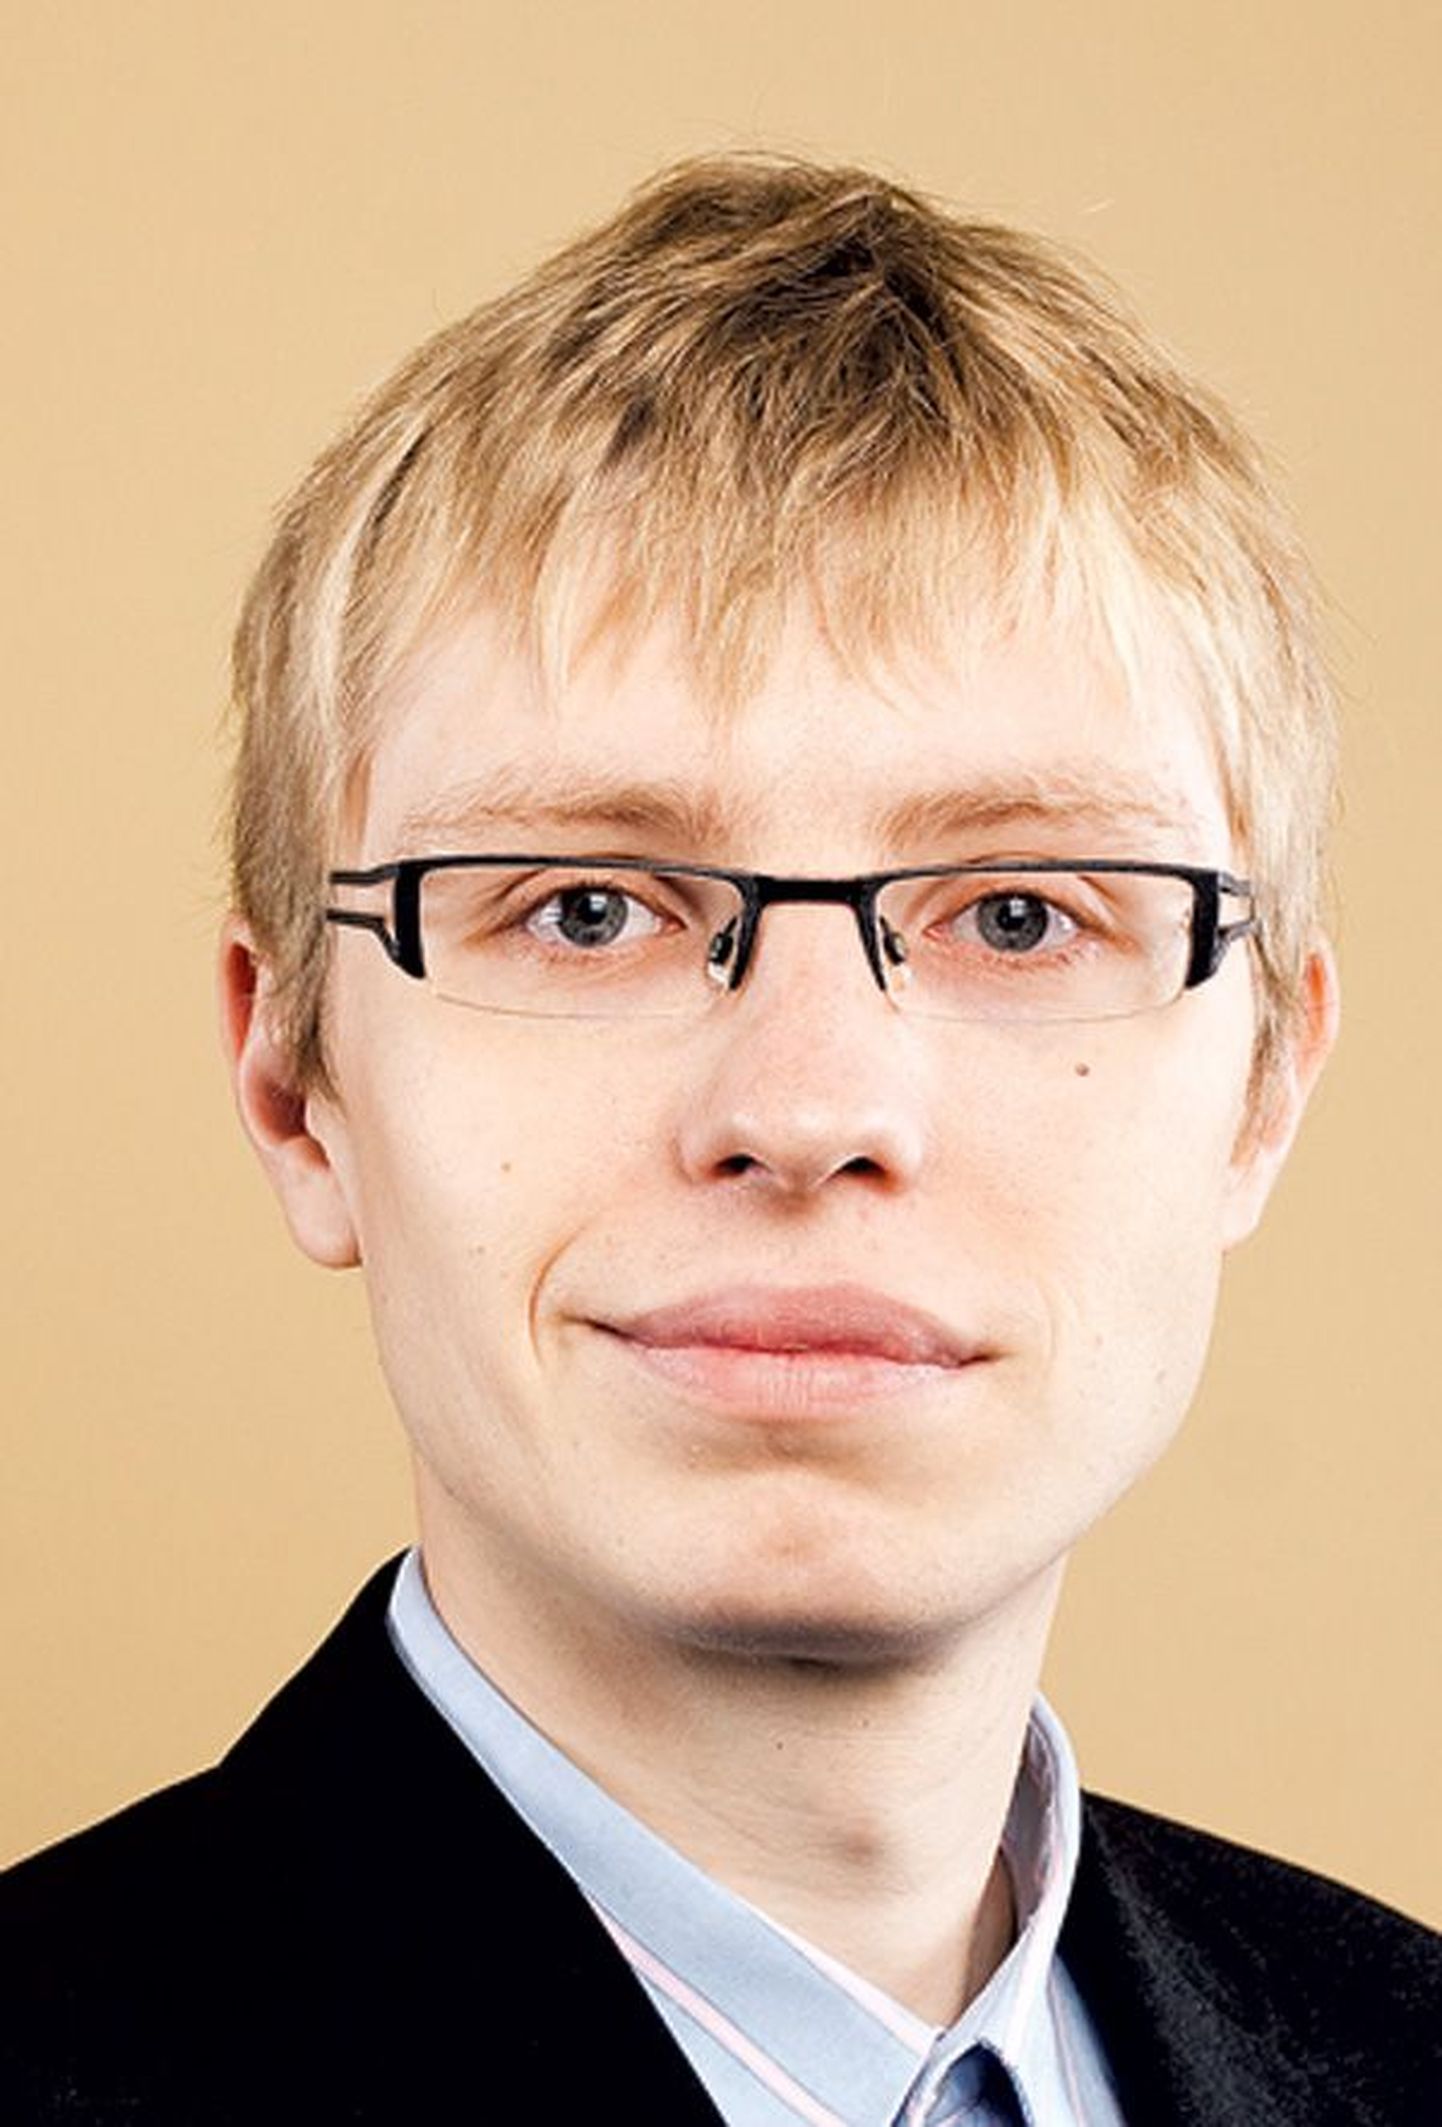 Majandus- ja kommunikat­sioonimi­nis­tee­riumi nõunik Rasmus Ruuda.